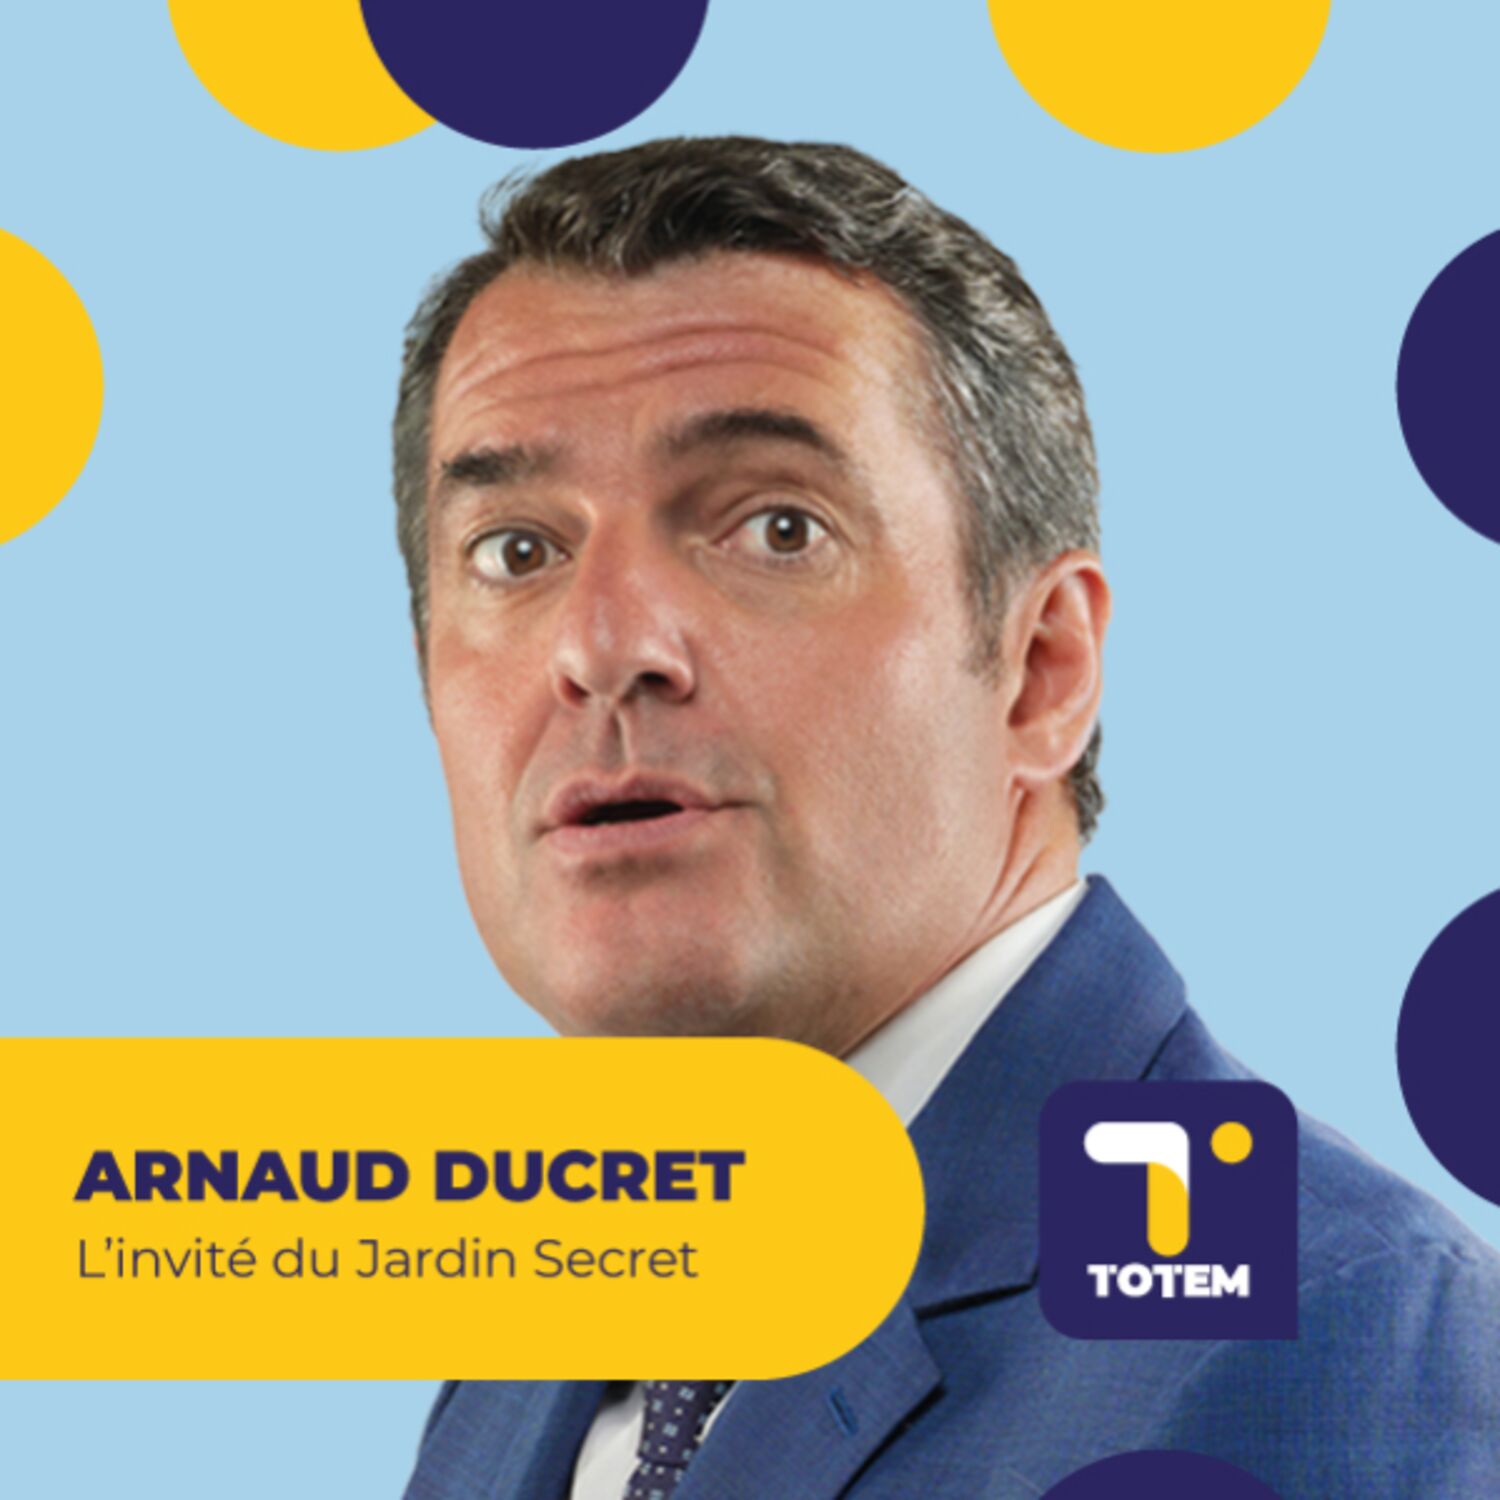 Arnaud Ducret et ses liens avec le foot